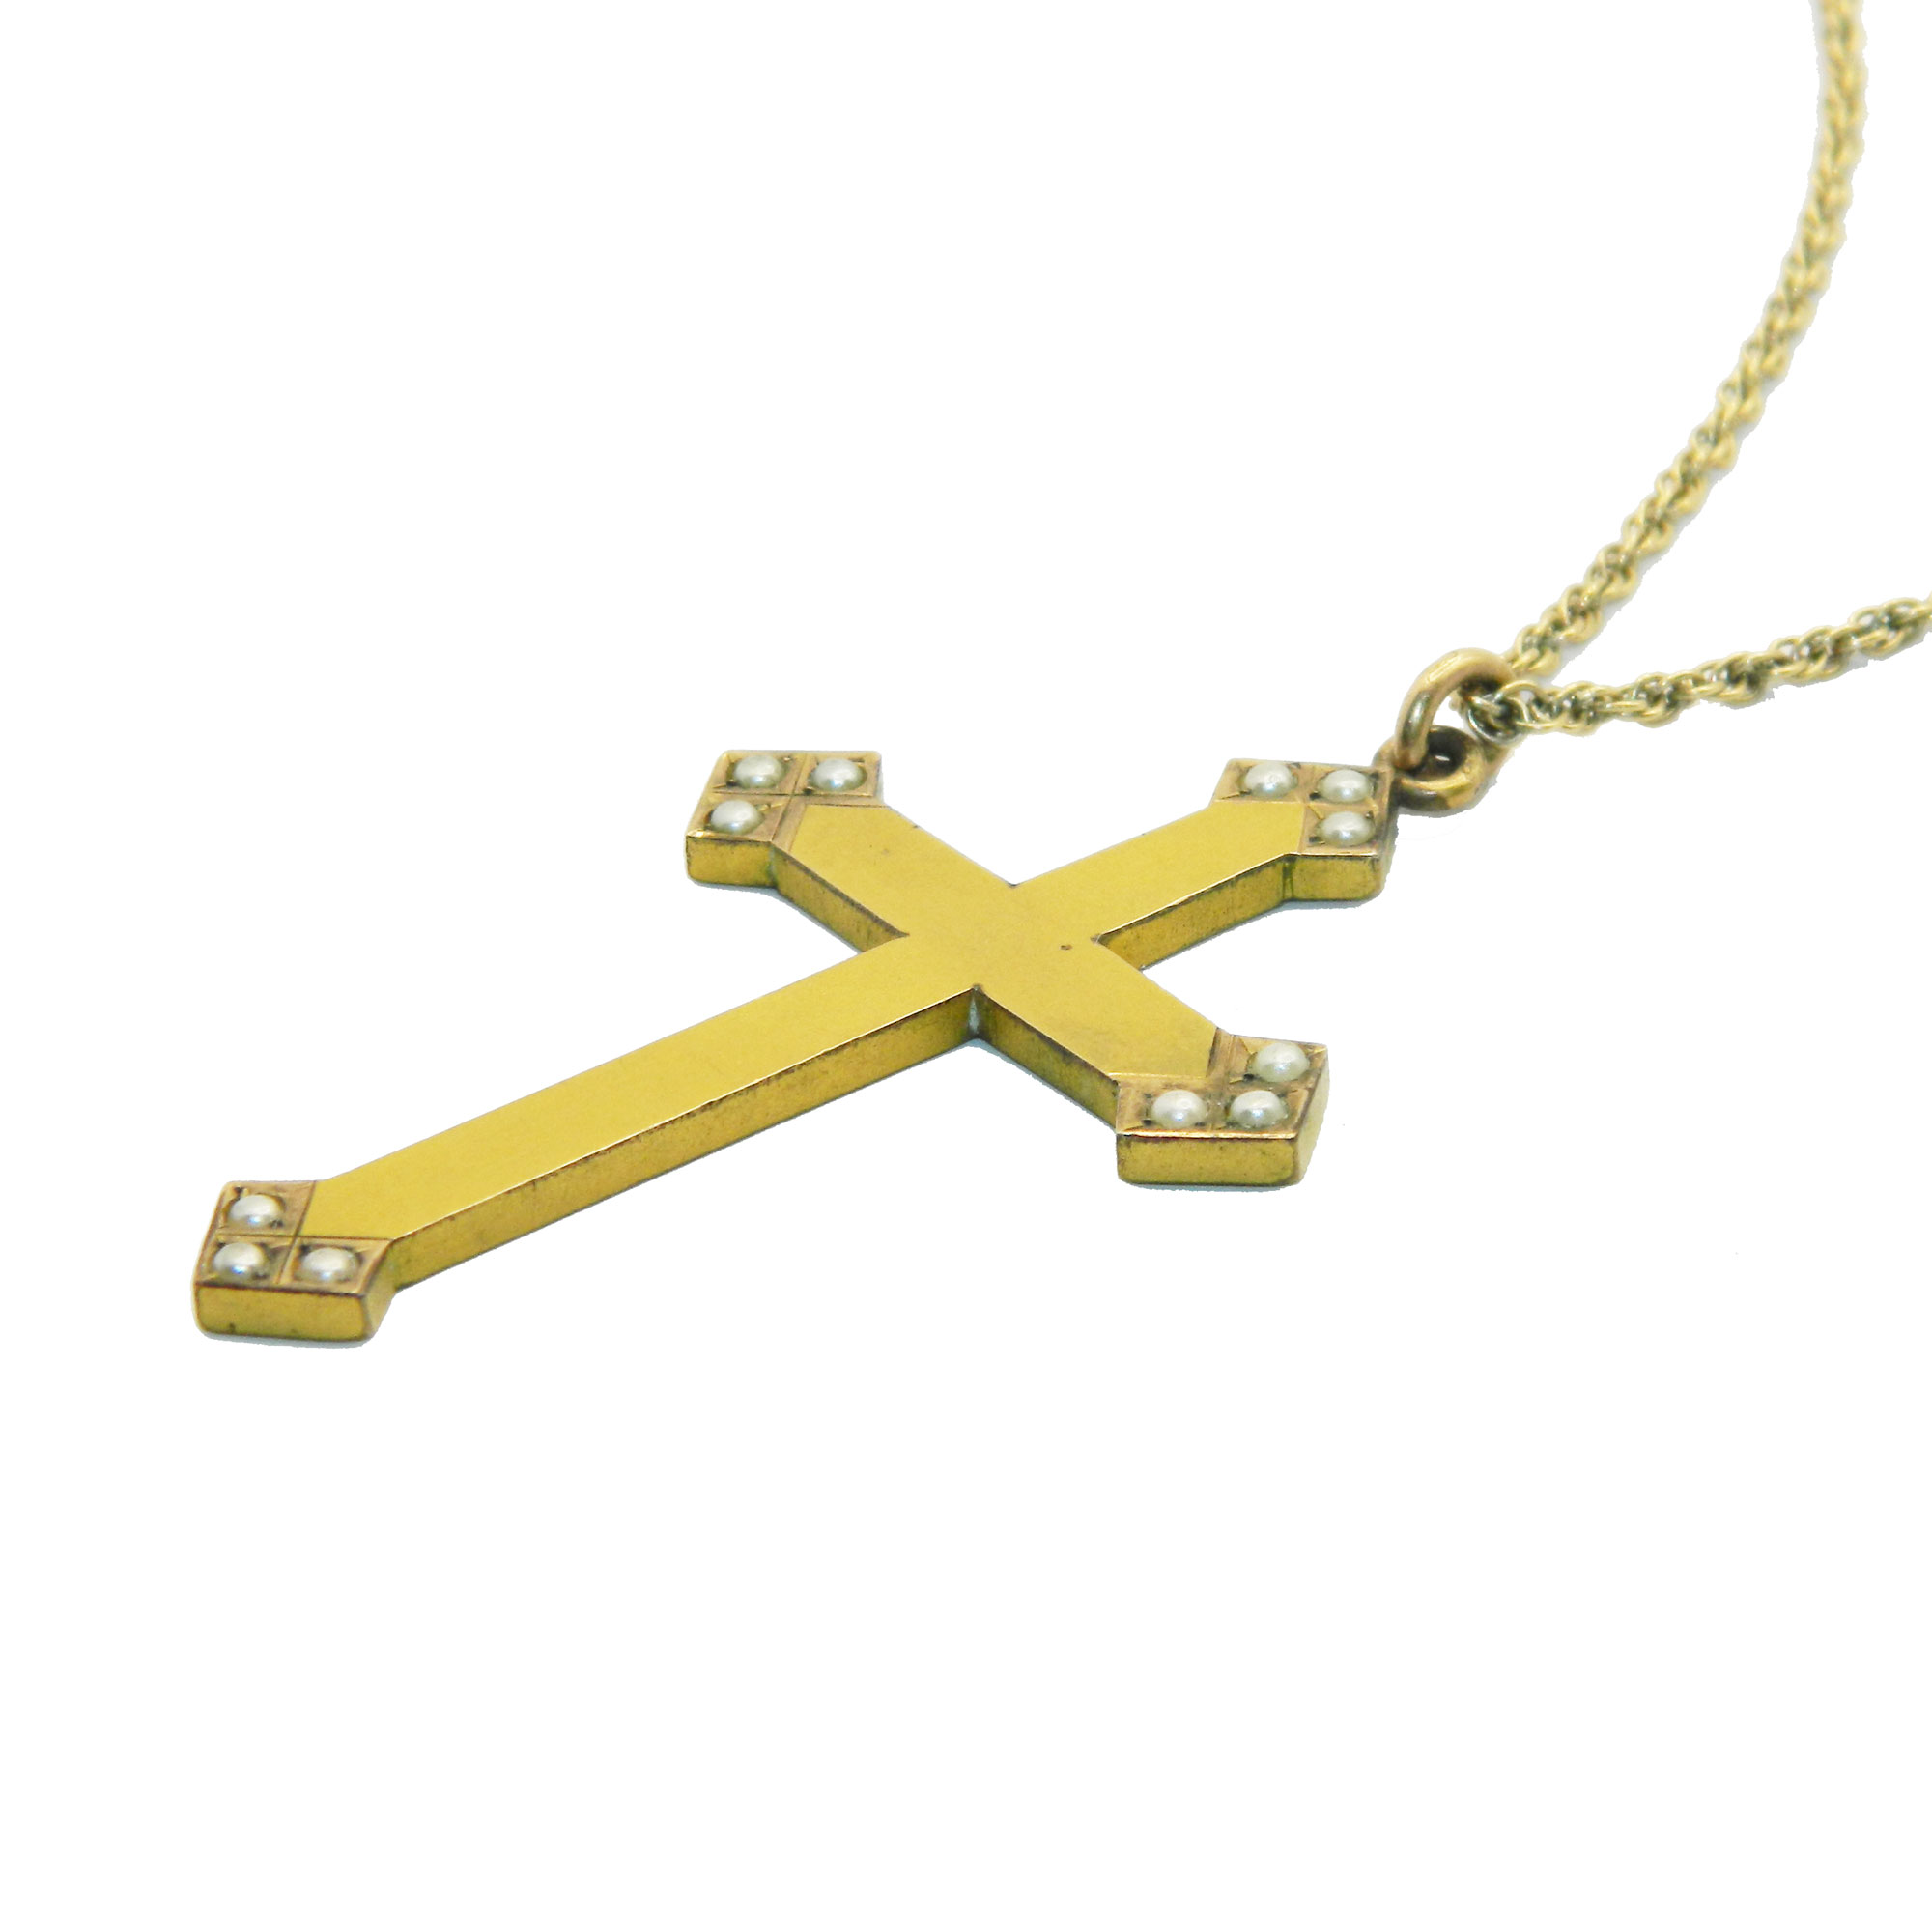 Vintage cross pendant necklace